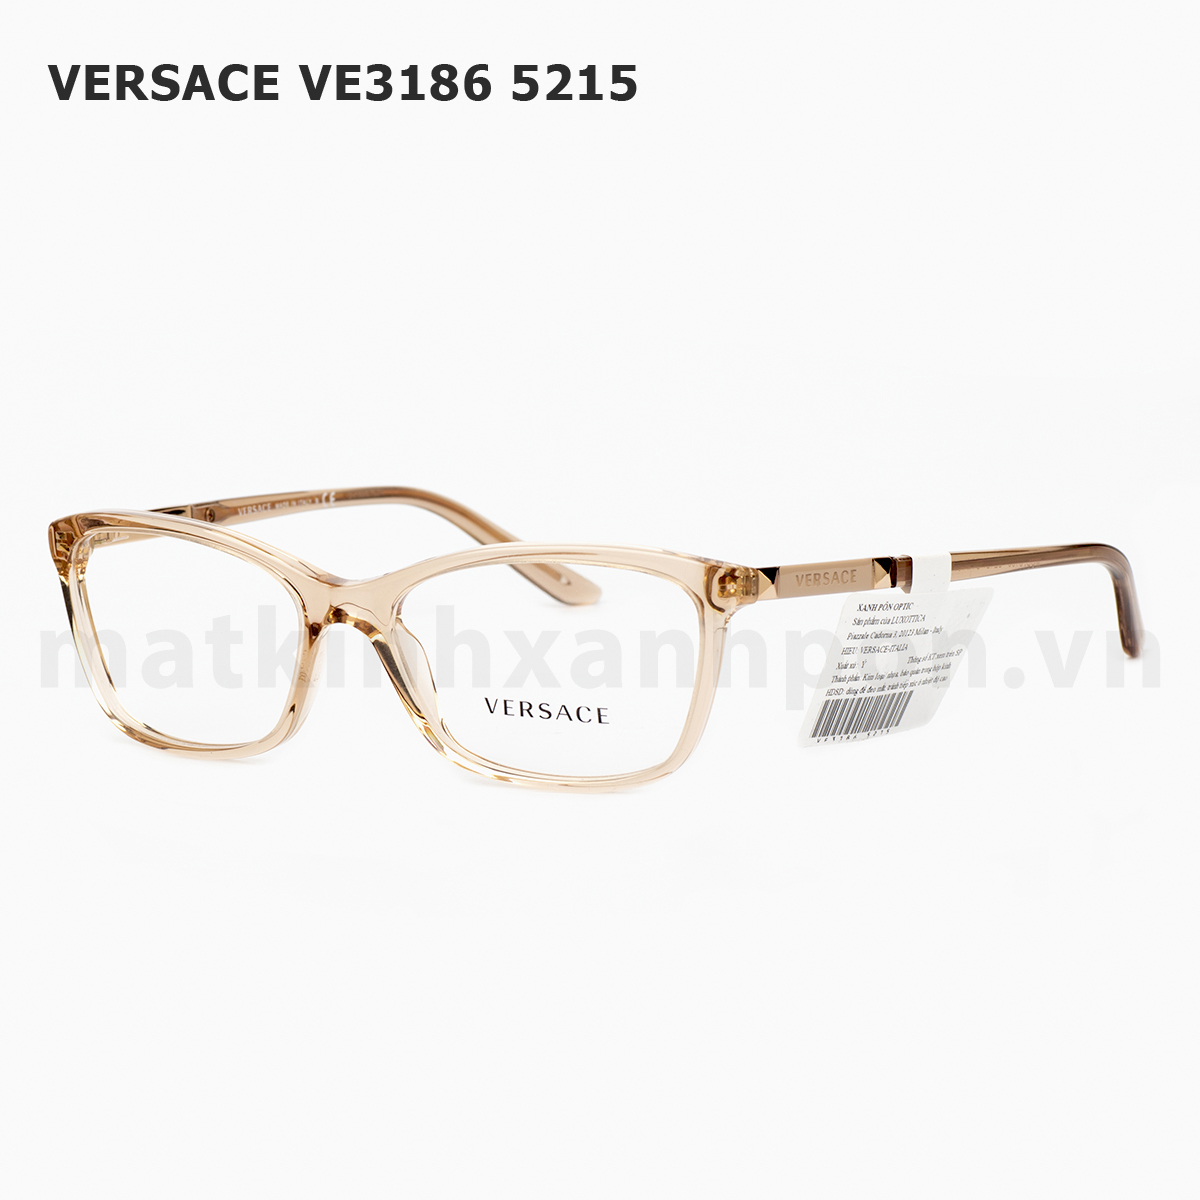 Versace VE3186 5215